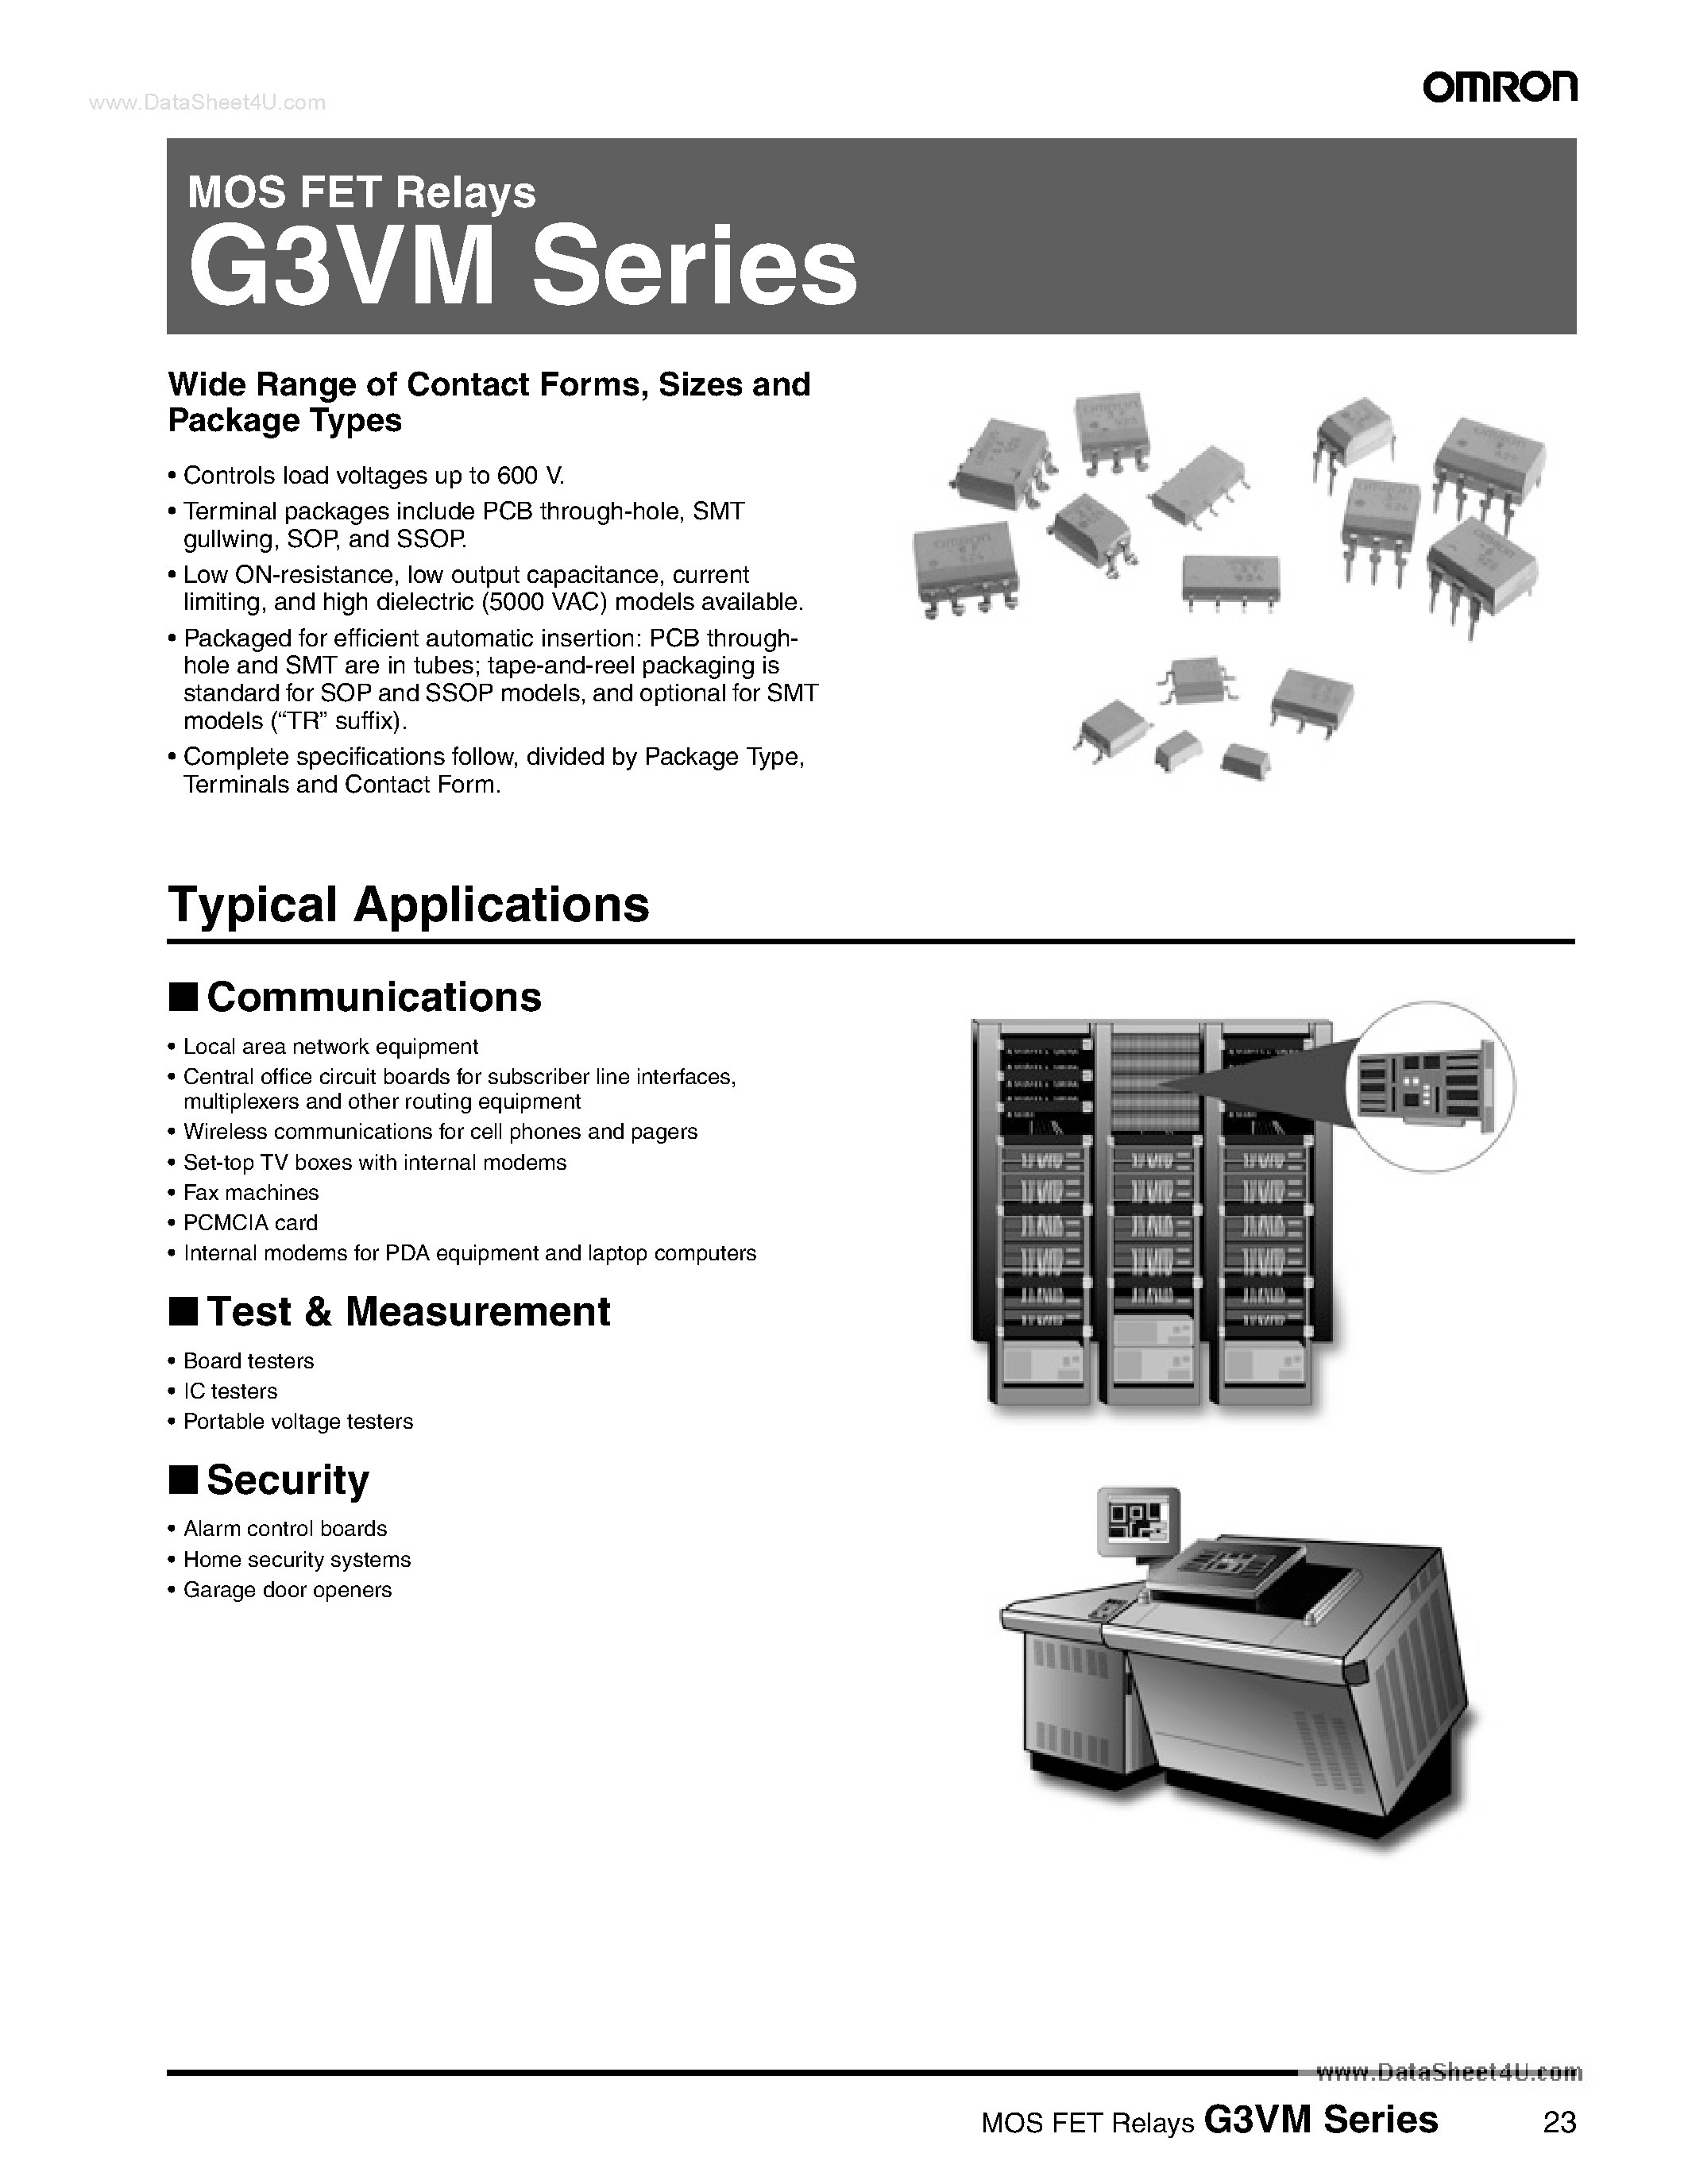 Datasheet G3VM-21xx - G3VM Series MOS Fet Relaysdata Sheet page 1